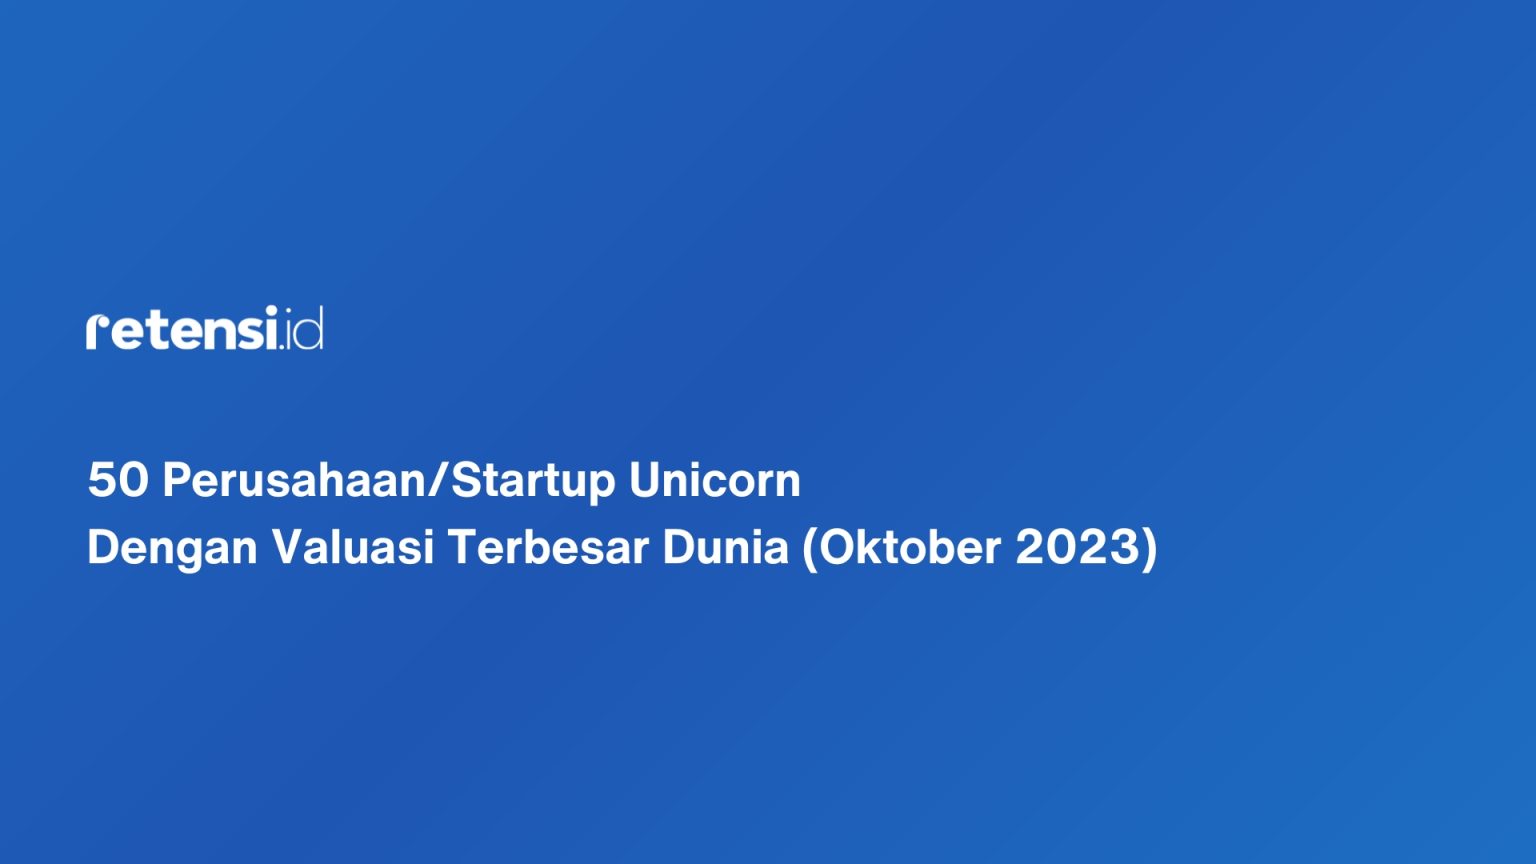 50 Perusahaan/Startup Unicorn Dengan Valuasi Terbesar Dunia (Oktober 2023)